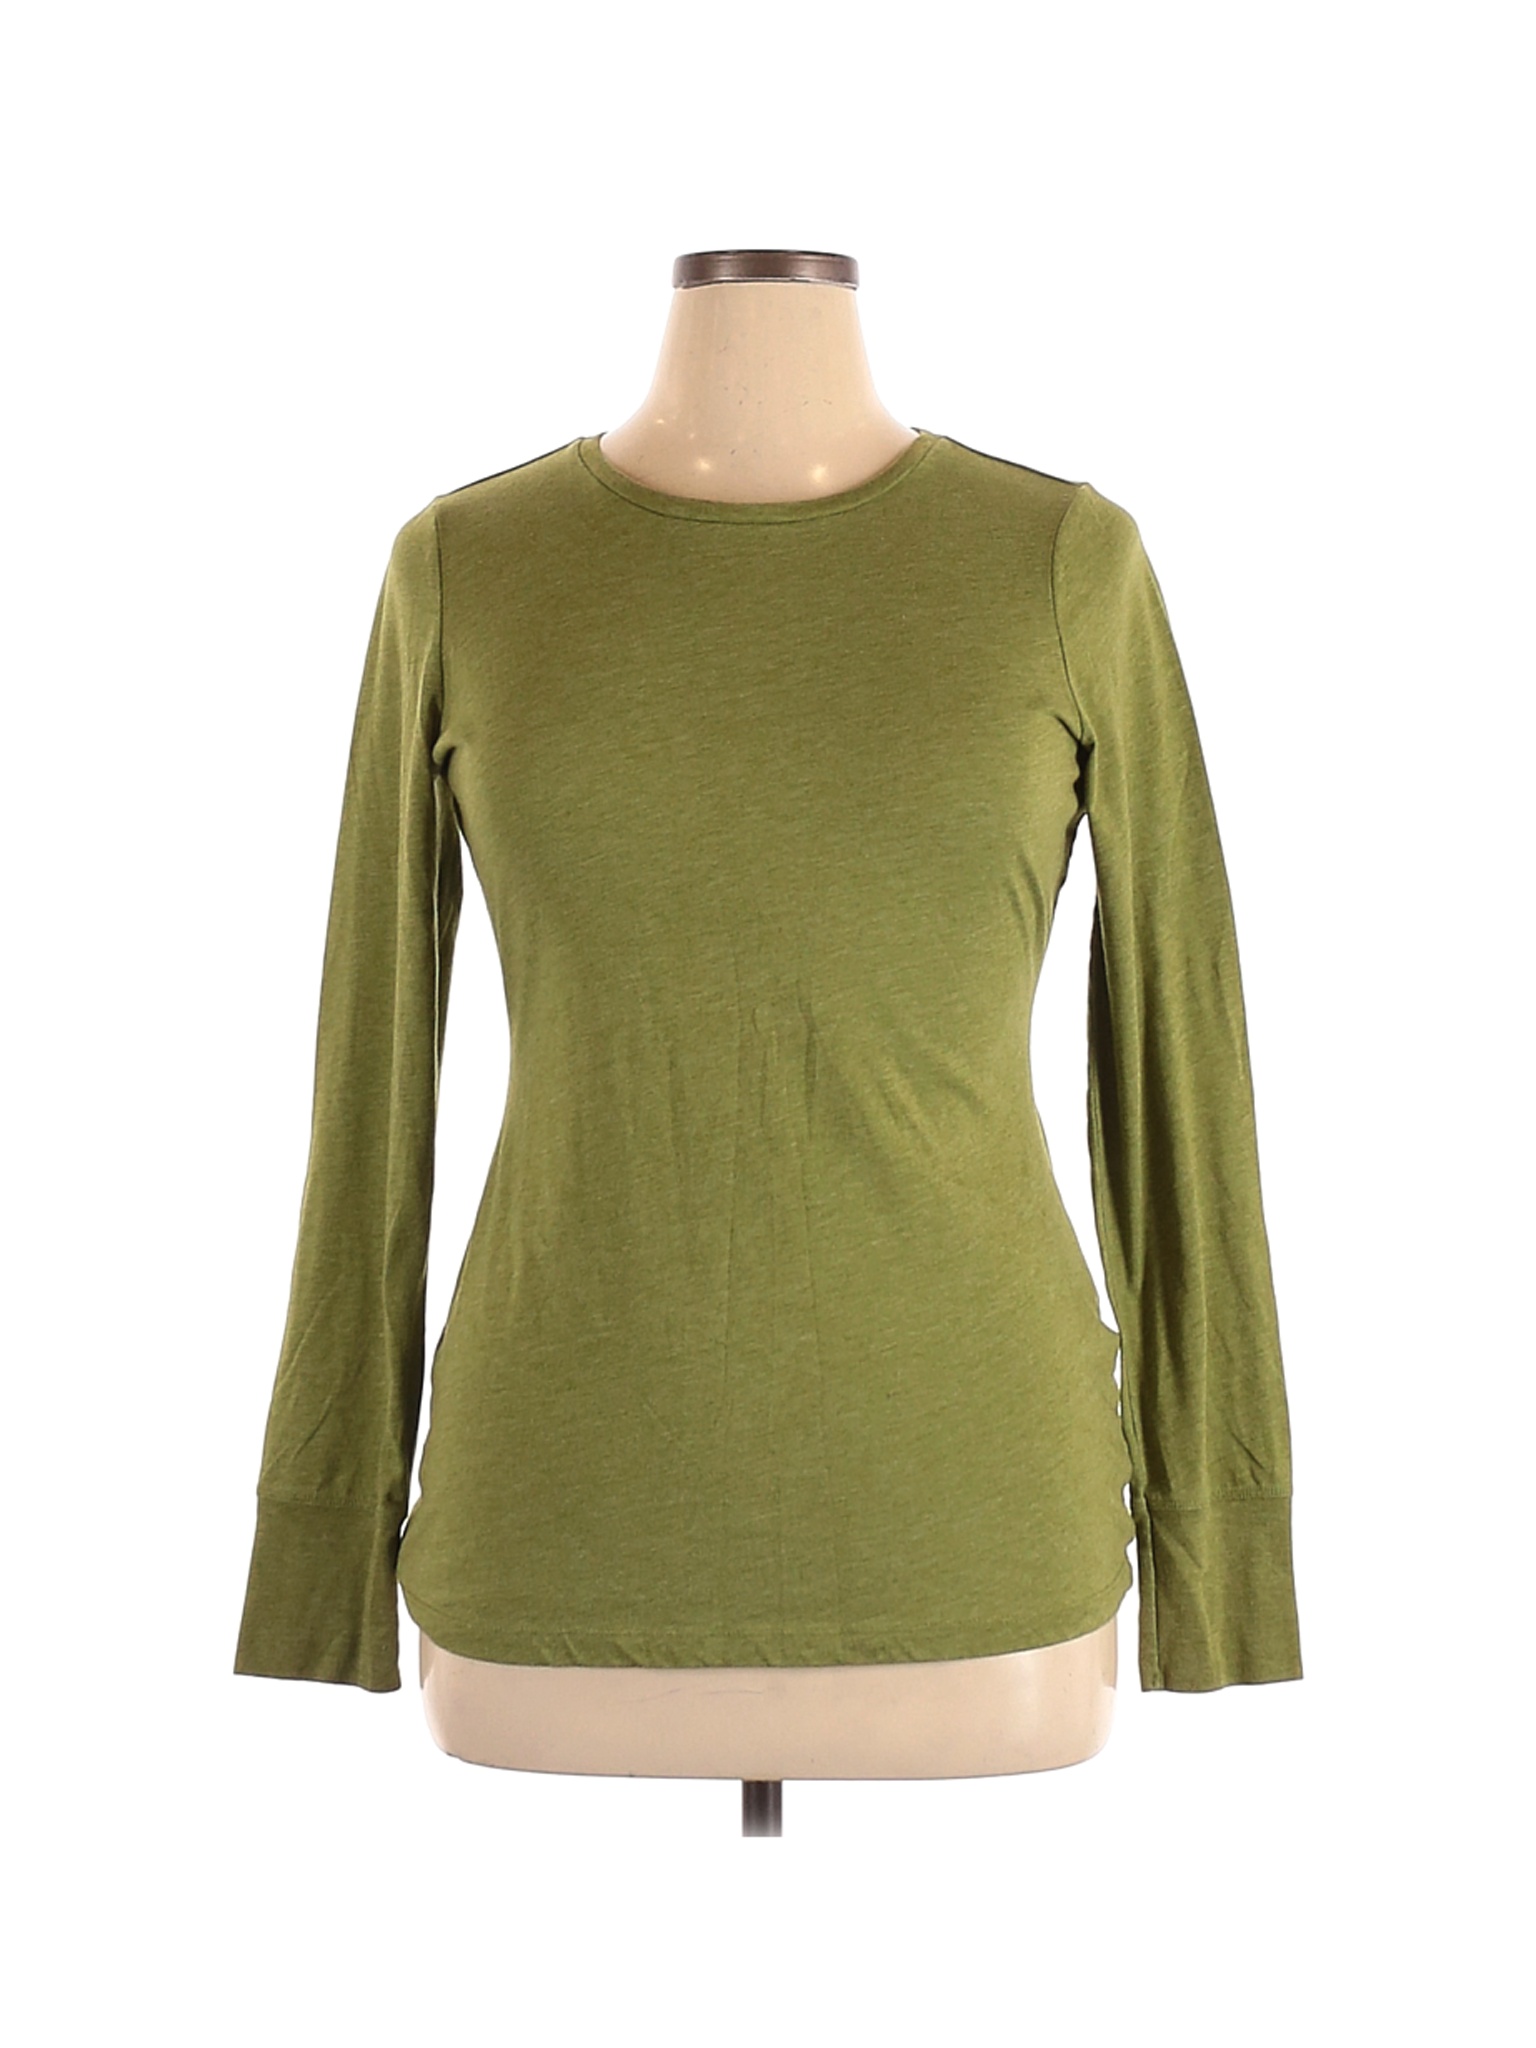 Maurices Women Green Long Sleeve Top XL | eBay